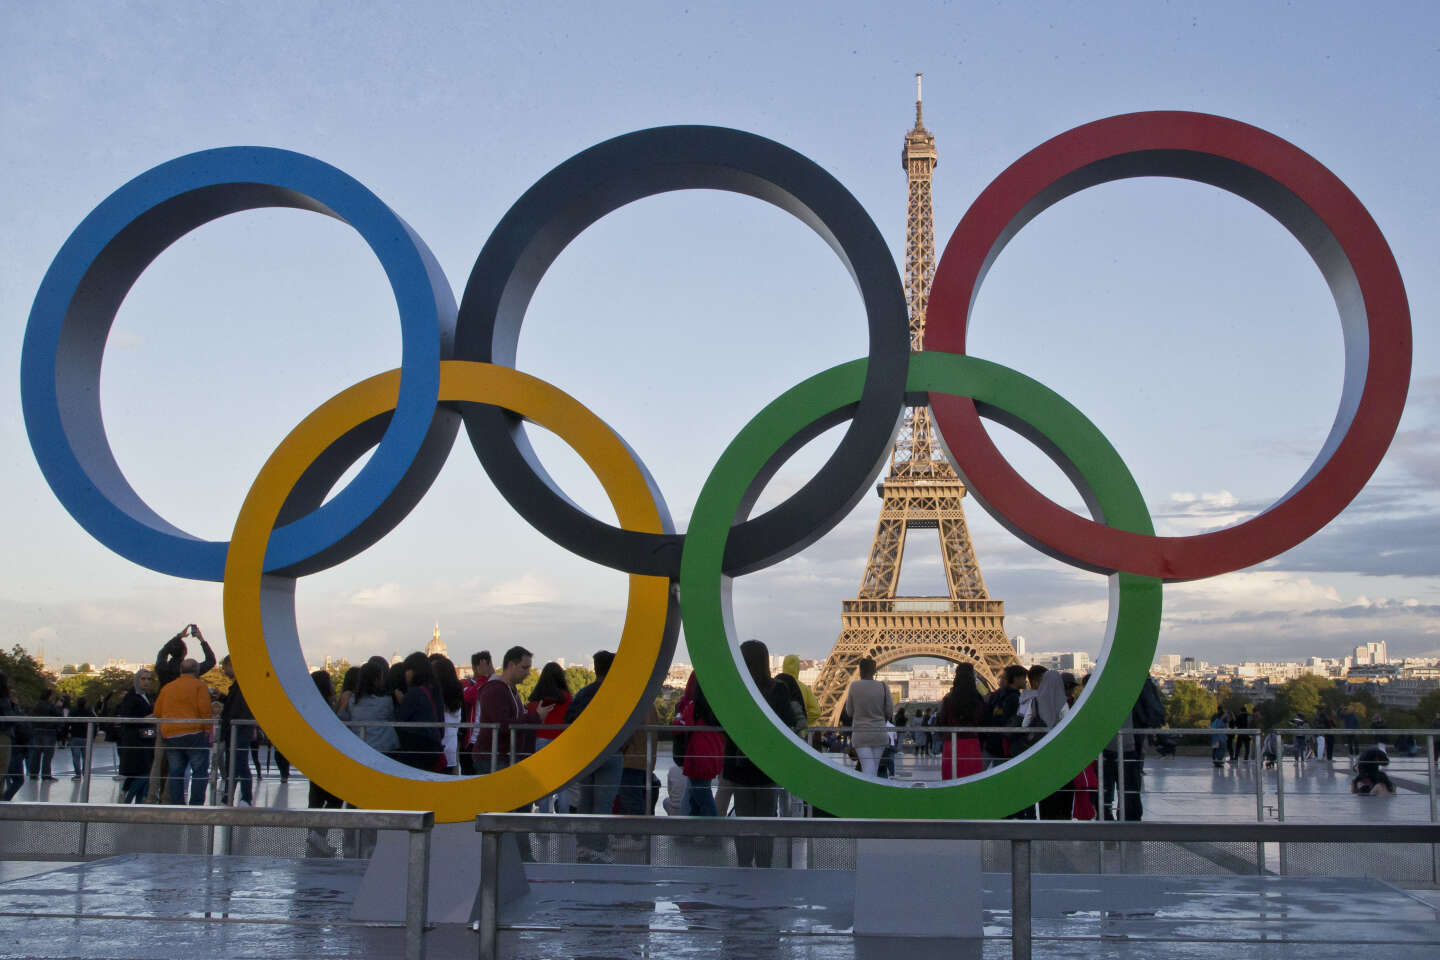 Paris 2024 - Comité d'organisation des Jeux Olympiques et Paralympiques de  2024 sur LinkedIn : Notre mascotte Phryge Olympique vous souhaite une bonne  journée et de…